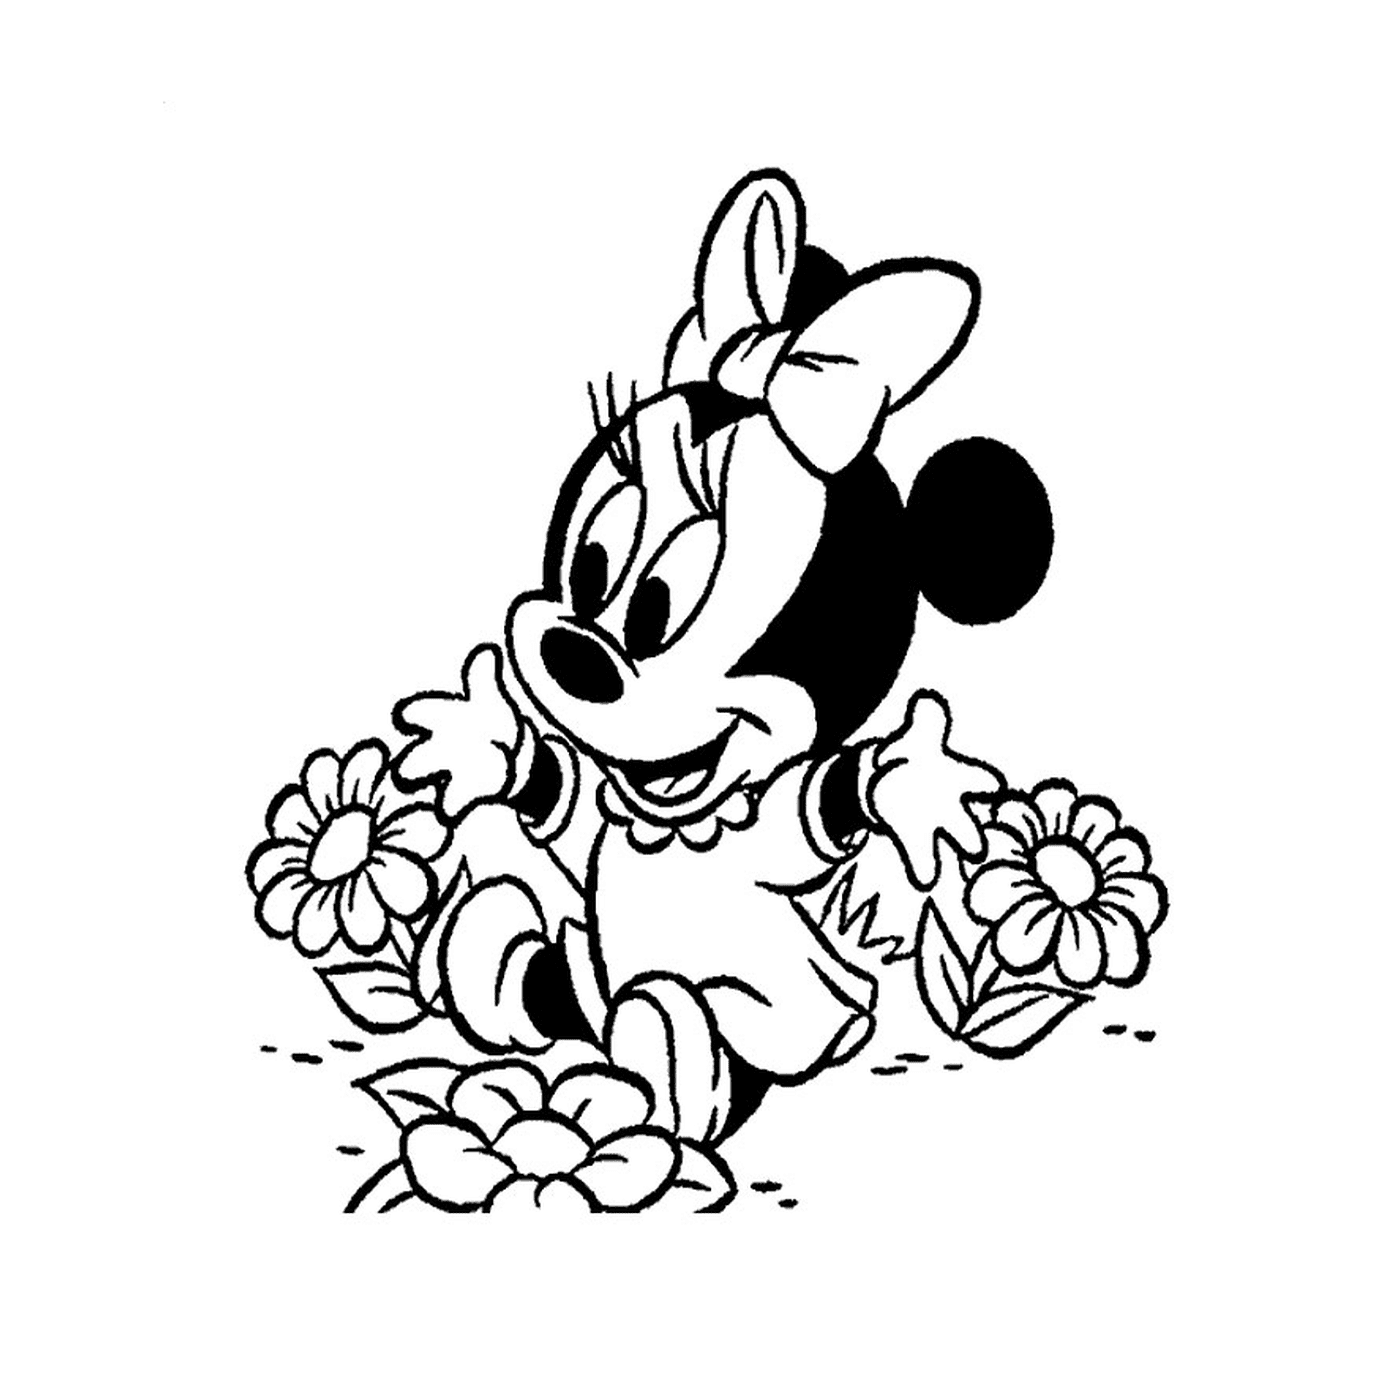  Minnie Mouse bambino seduto su fiori 